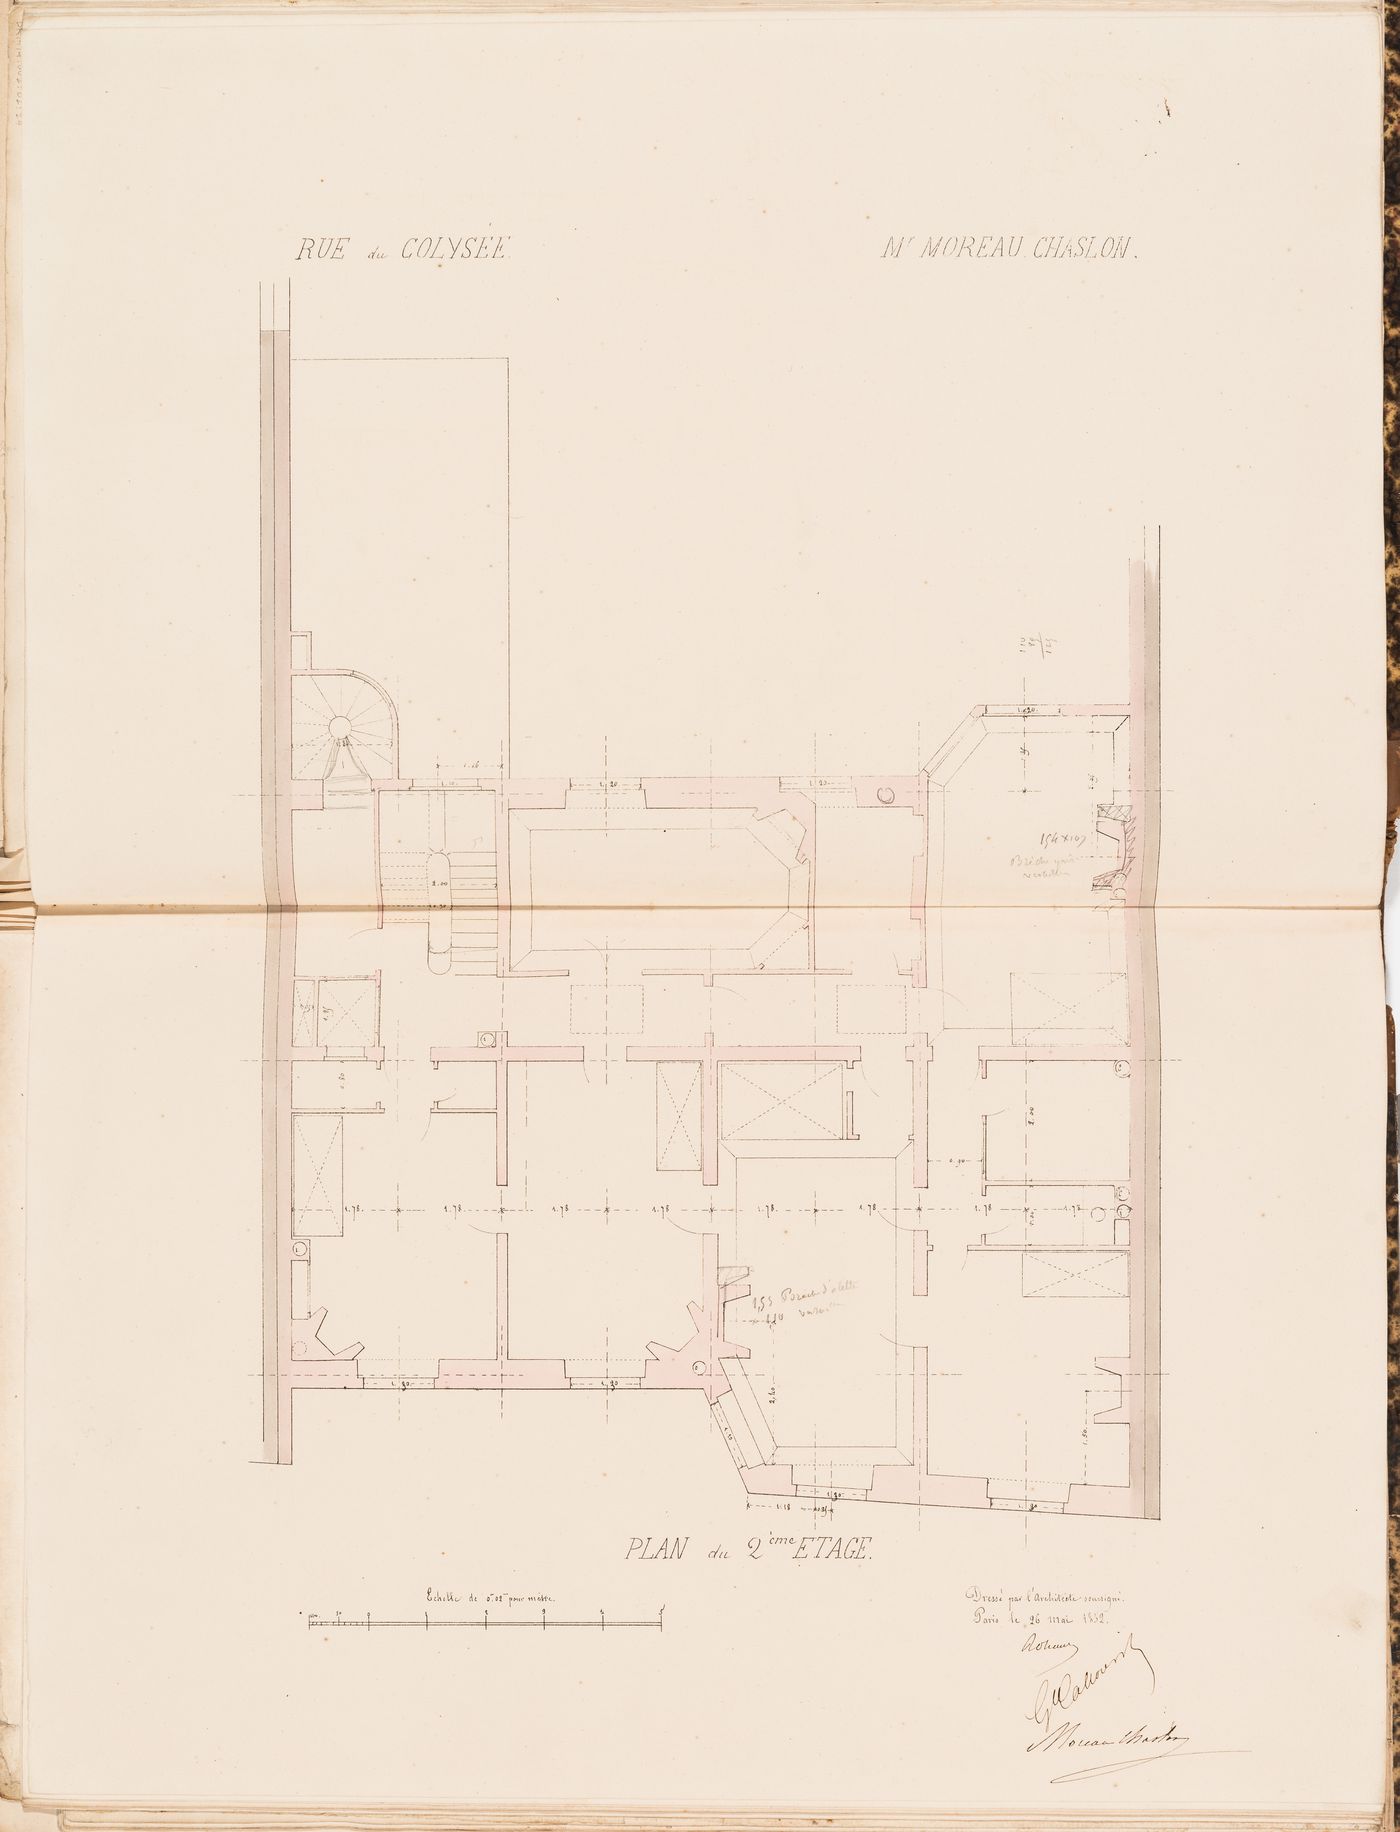 Contract drawings for a house for Monsieur Moreau Chaslon, rue du Colysée, Paris: Second floor plan